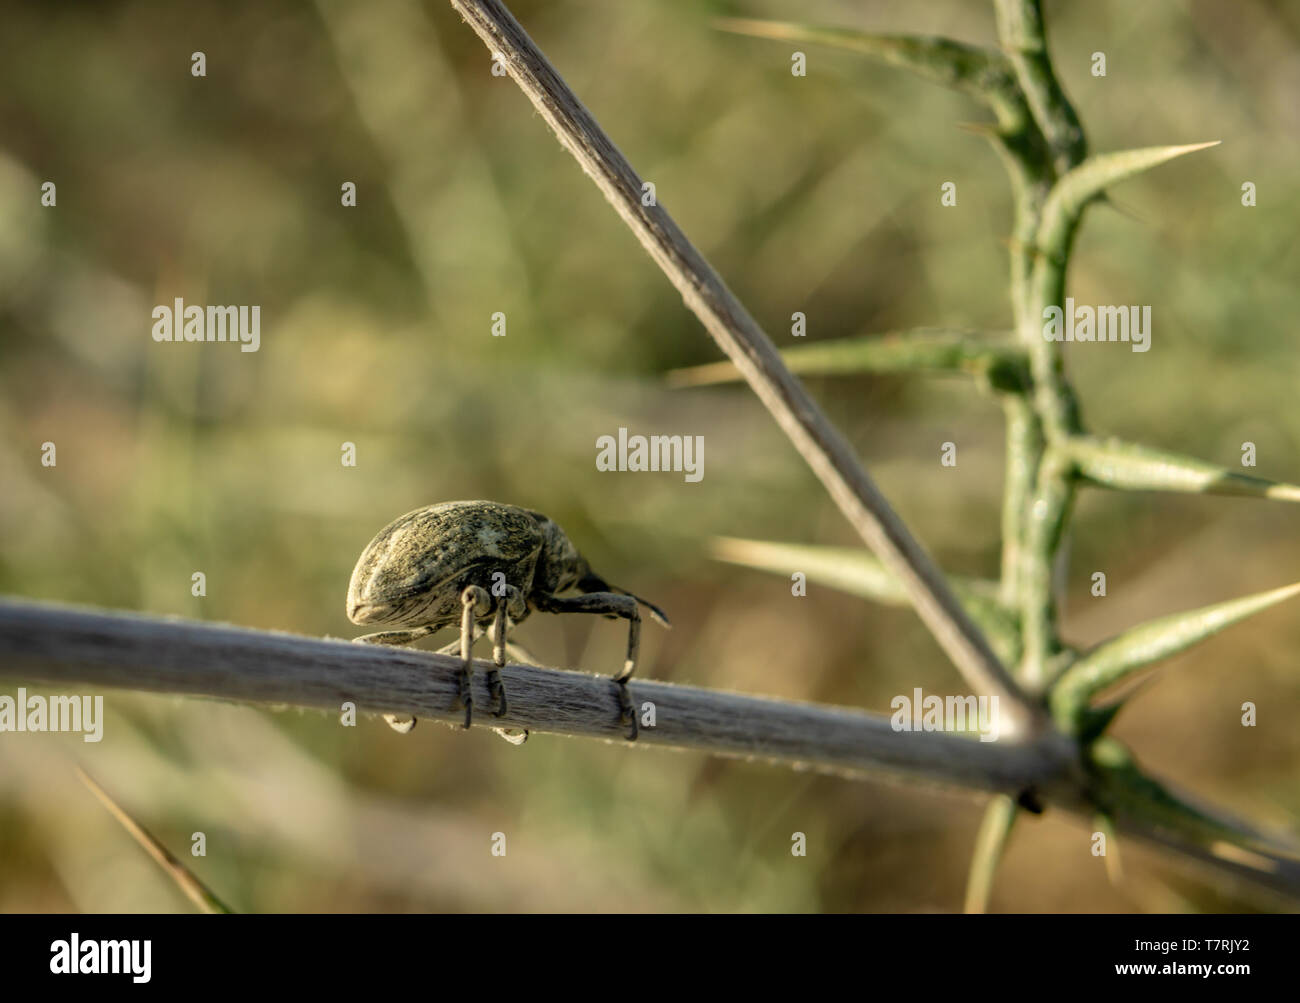 Larinus planus - curculione beetle Foto Stock